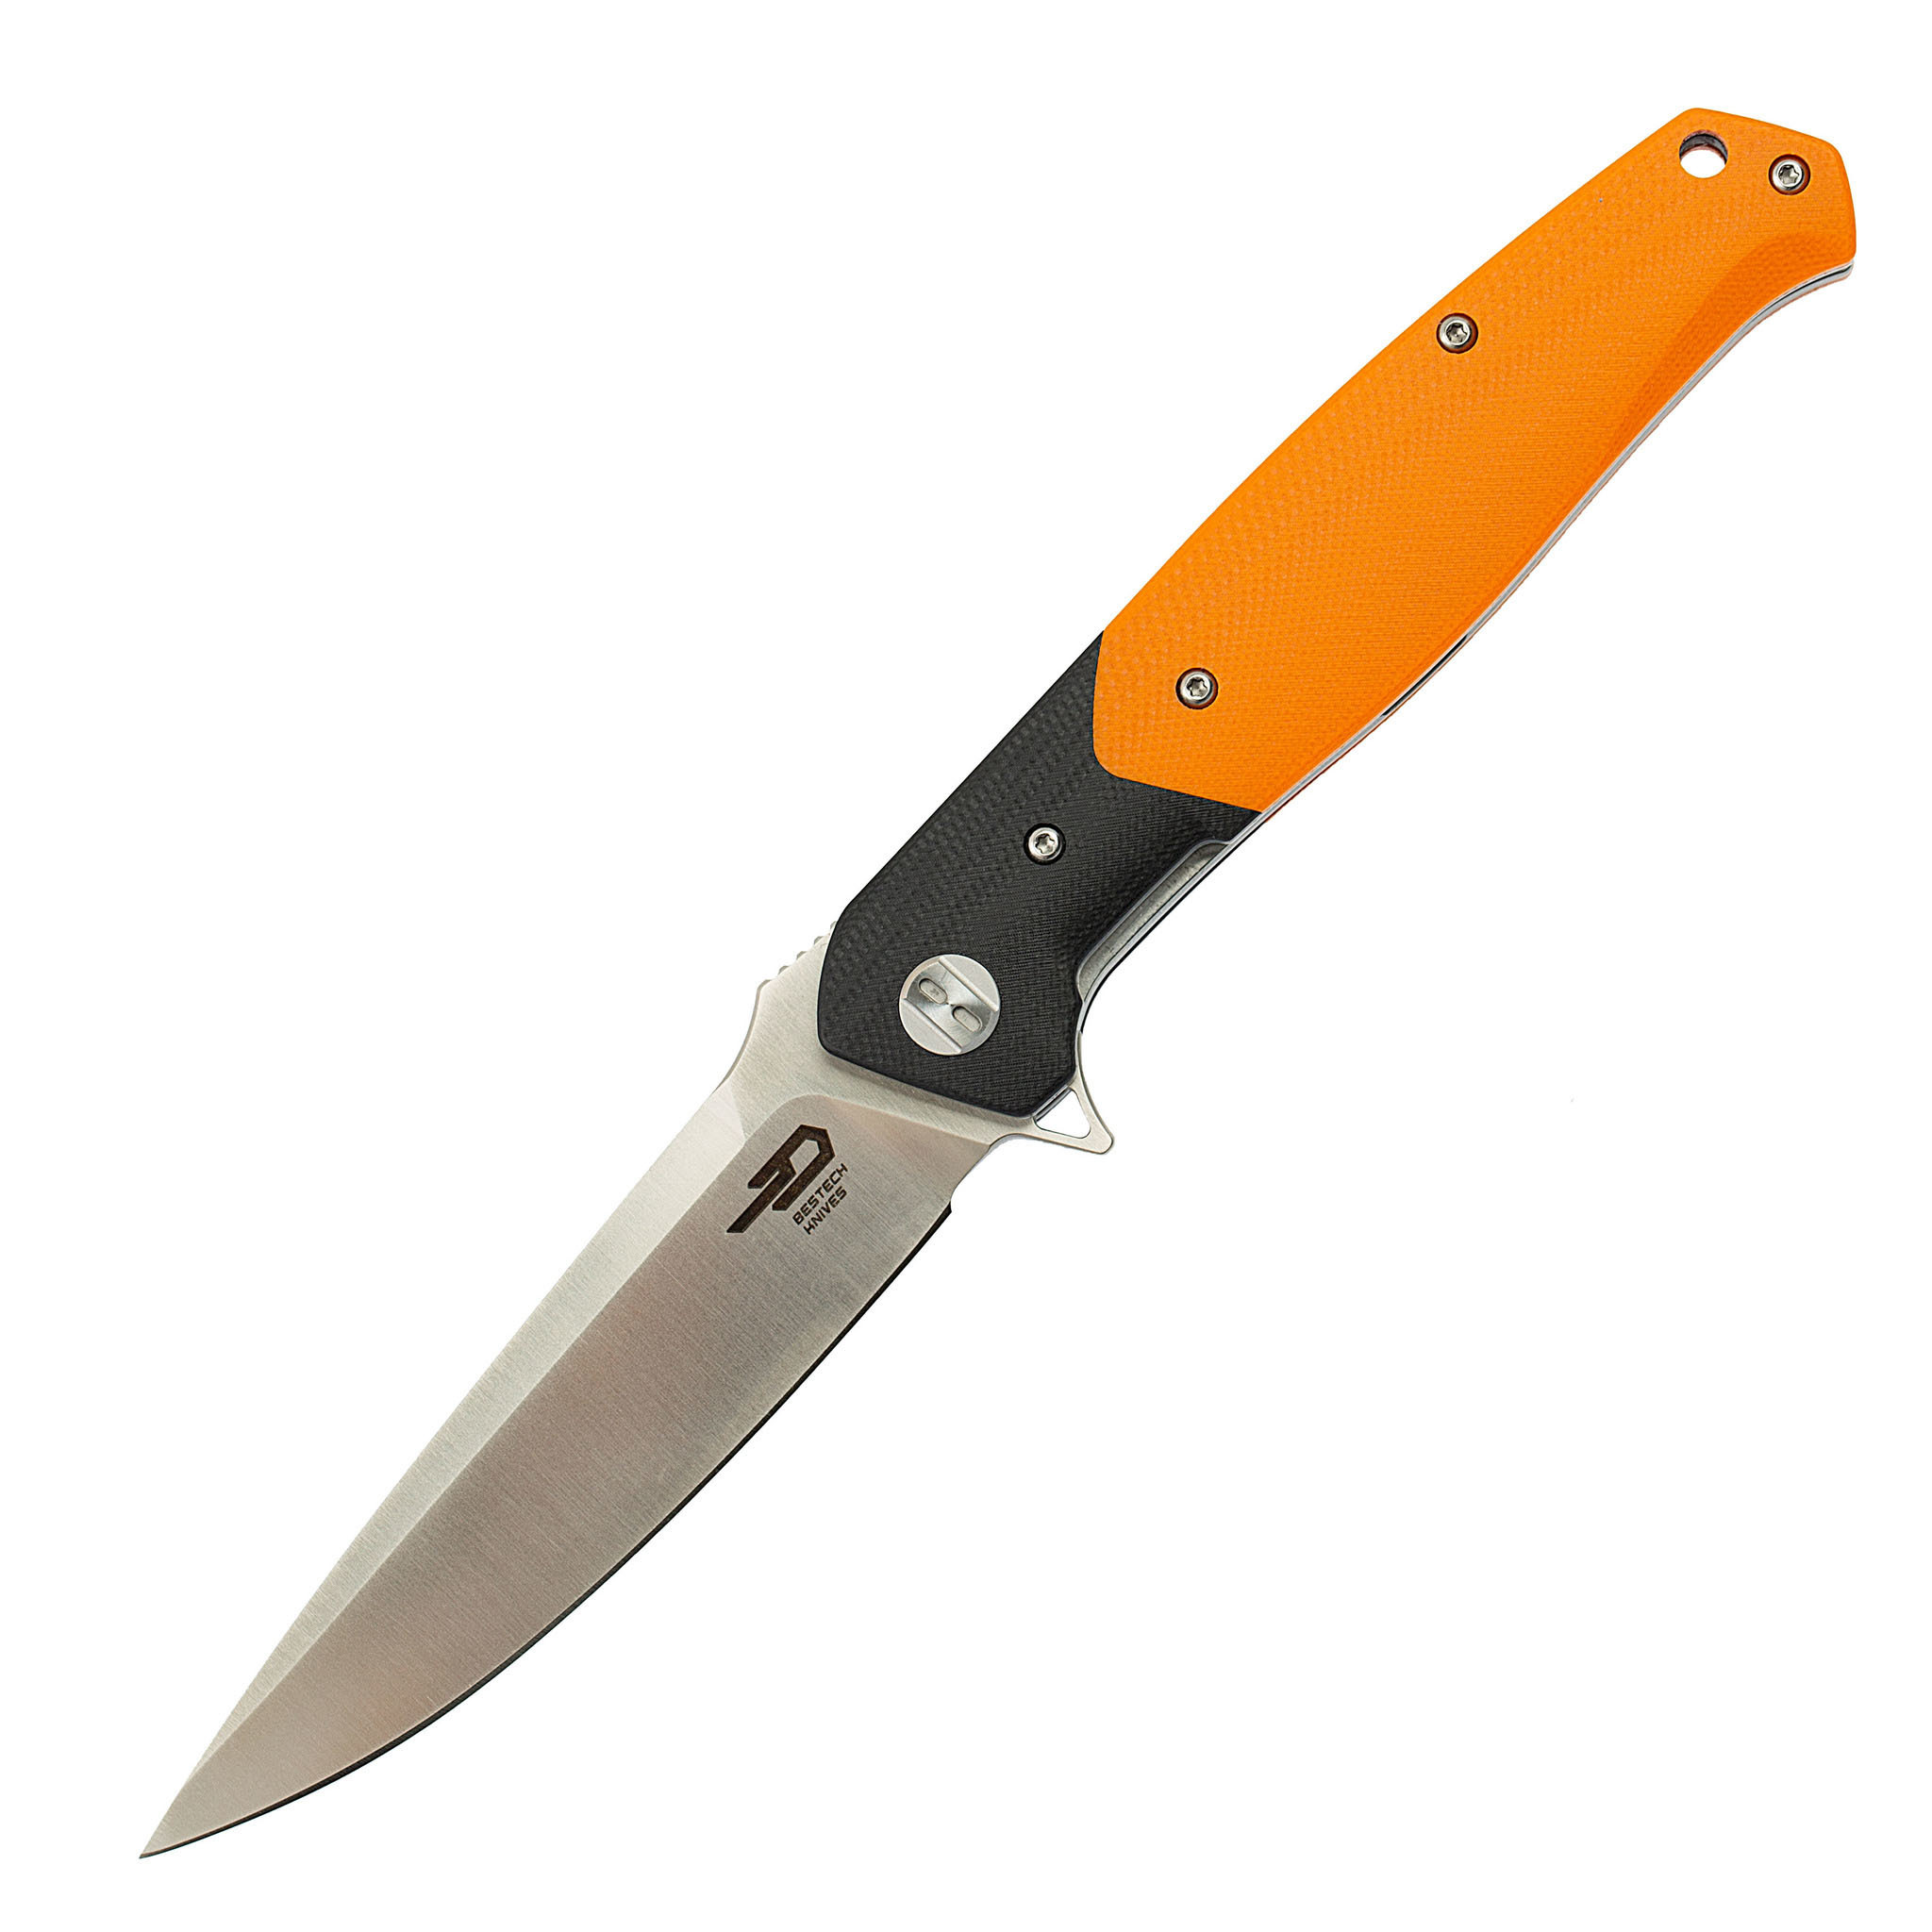 Складной нож Bestech Swordfish Оранжевый, D2 складной нож bestech swift сталь d2 micarta